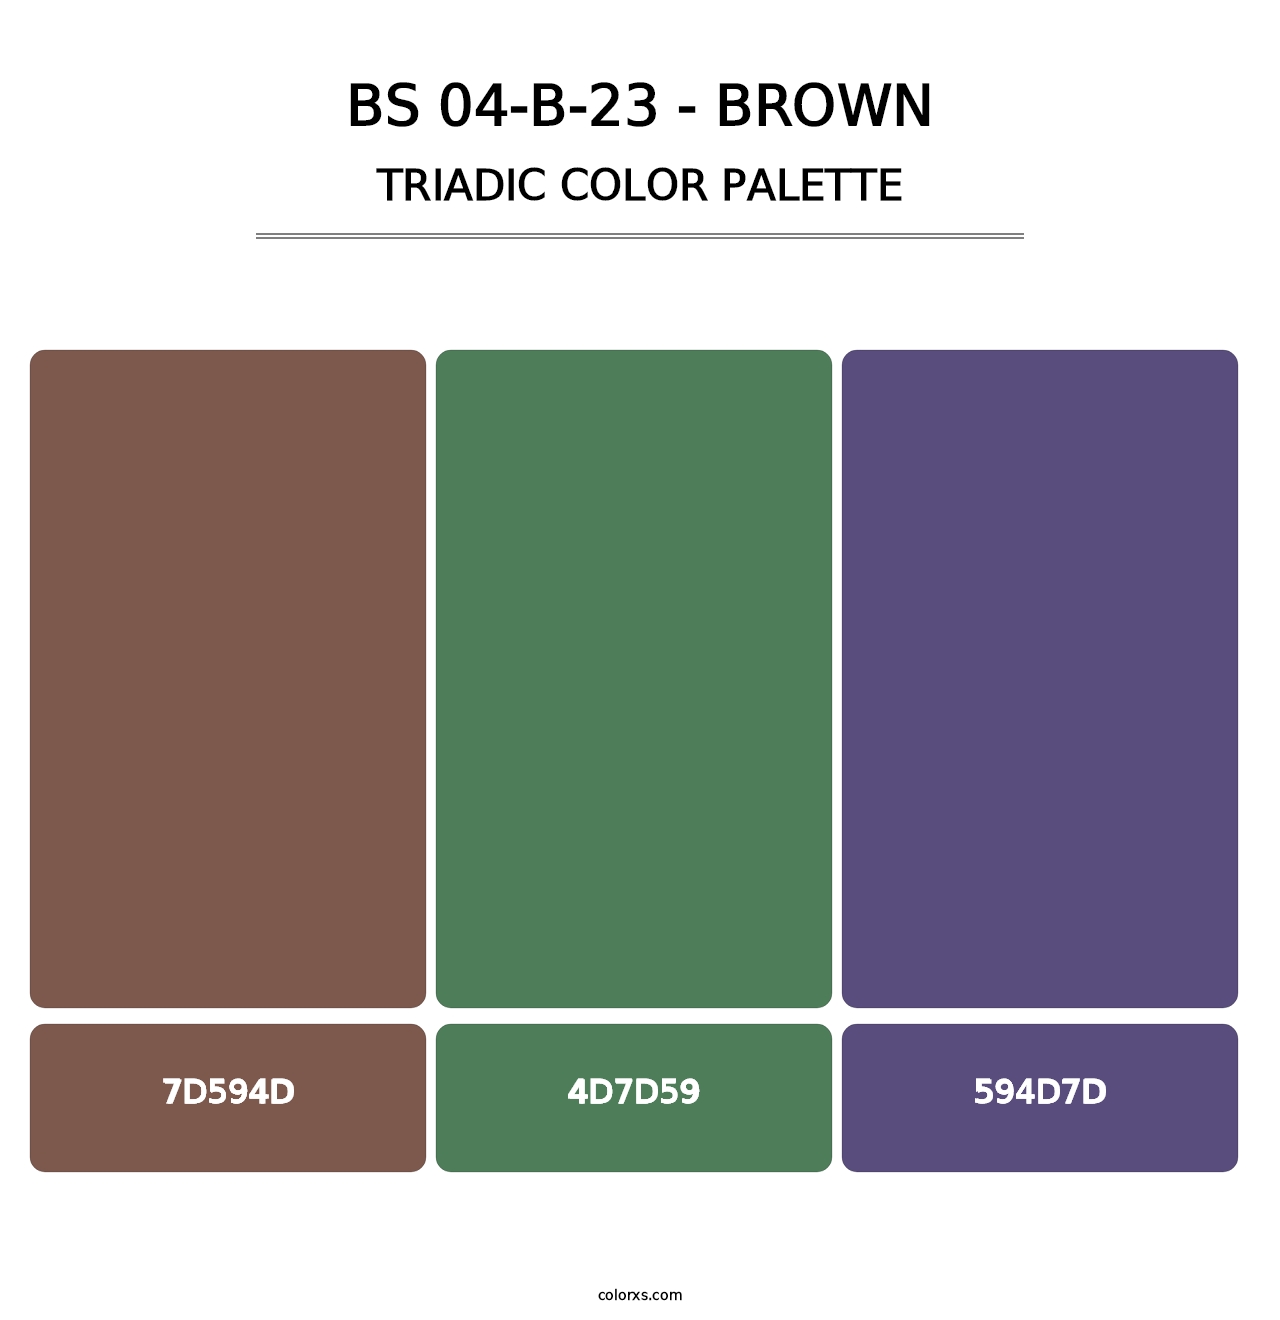 BS 04-B-23 - Brown - Triadic Color Palette